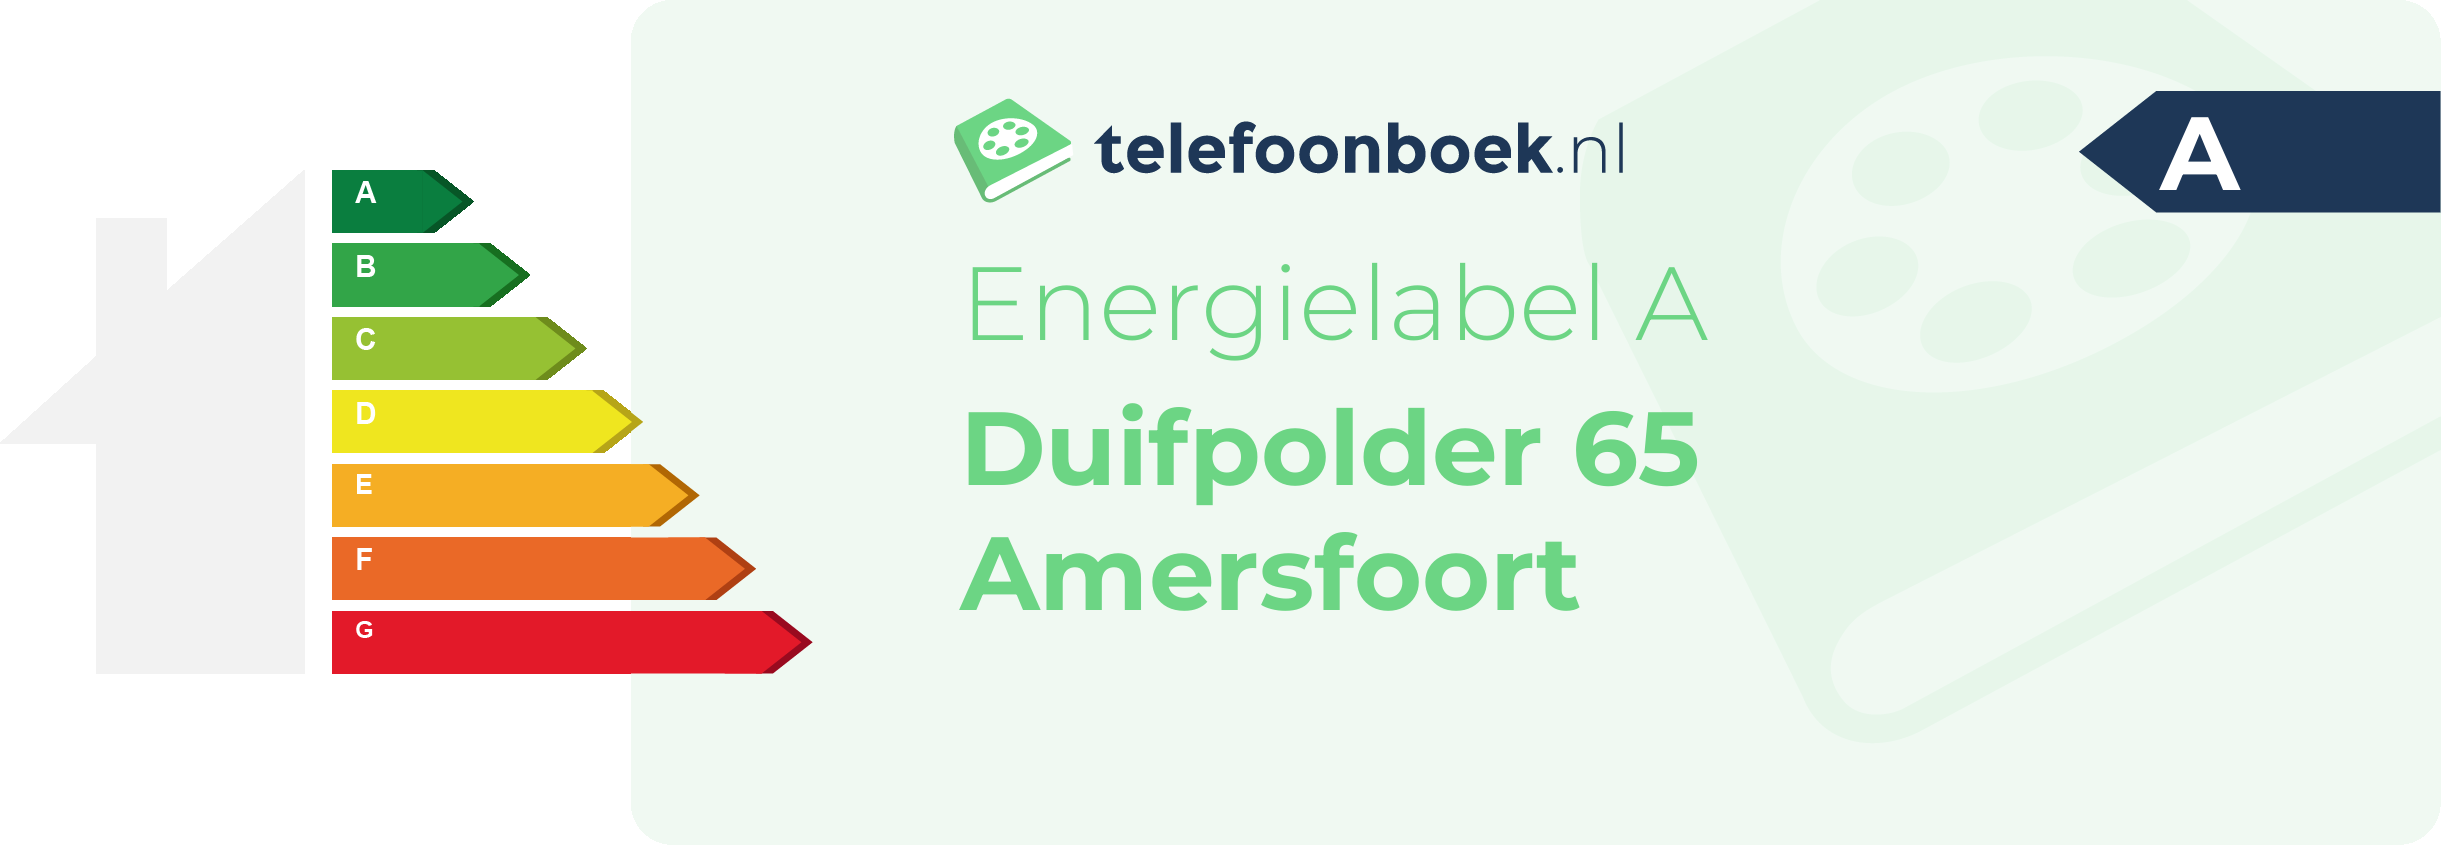 Energielabel Duifpolder 65 Amersfoort